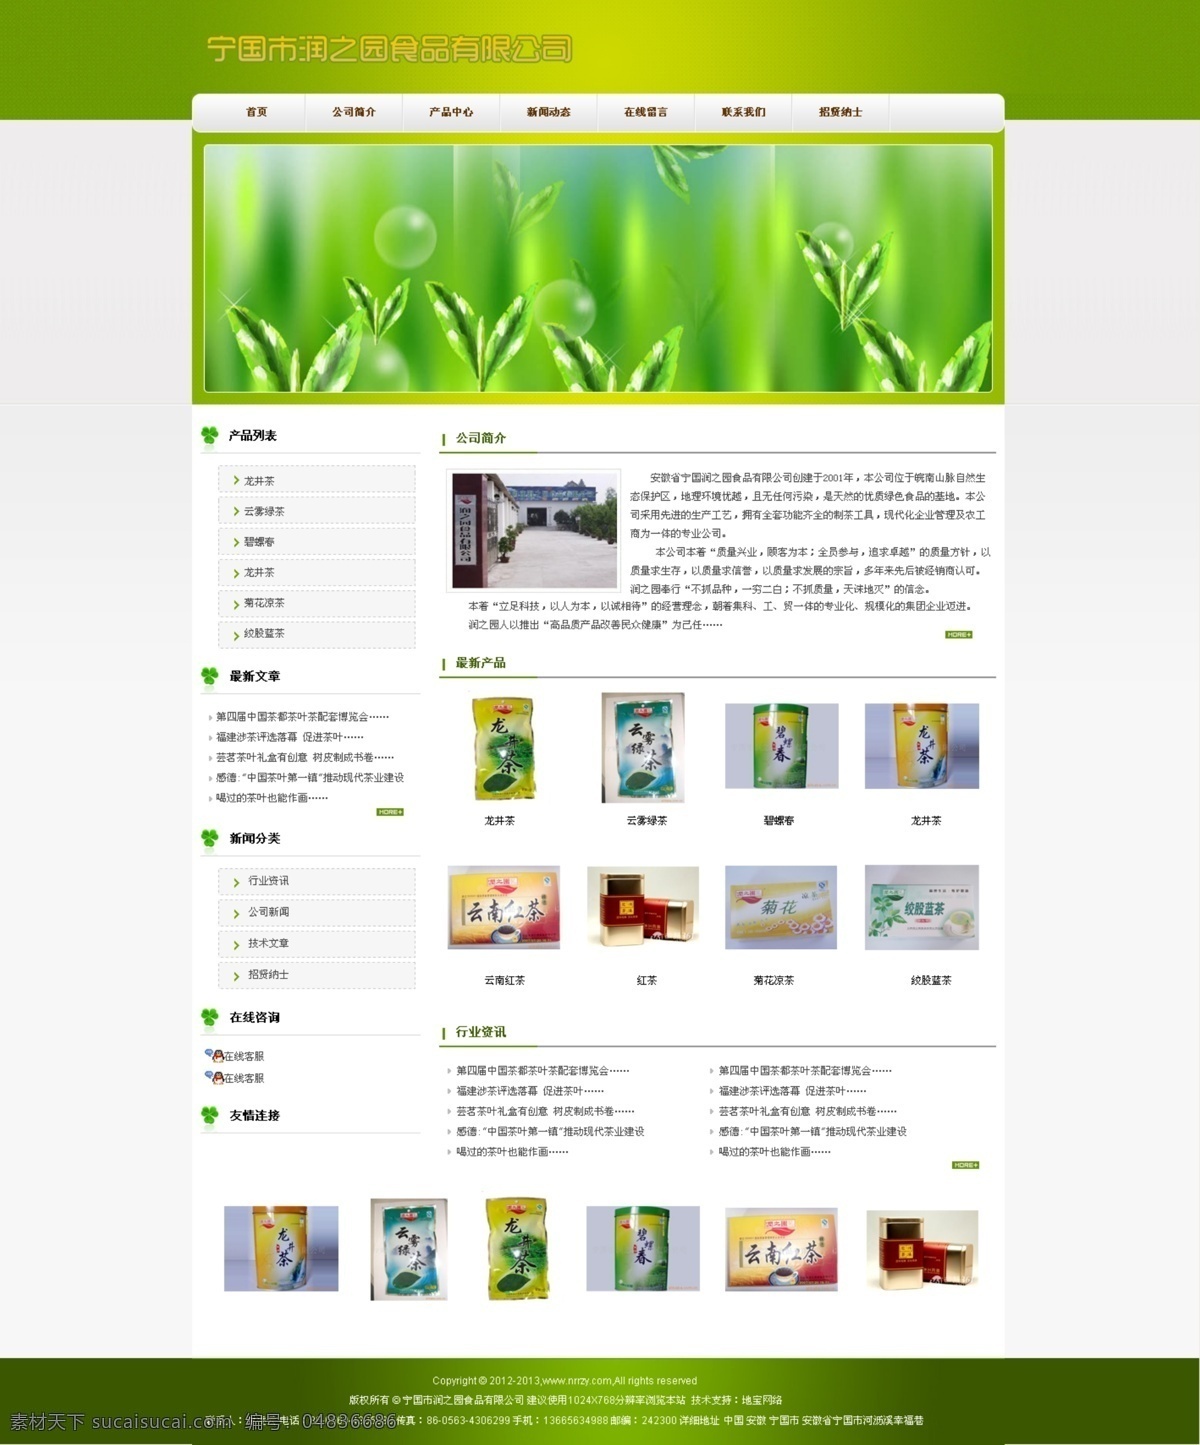 茶叶 绿色 商贸 食品 网页模板 网站首页 源文件 中文模版 网站 模版 模板下载 食品网站模版 psd源文件 餐饮素材